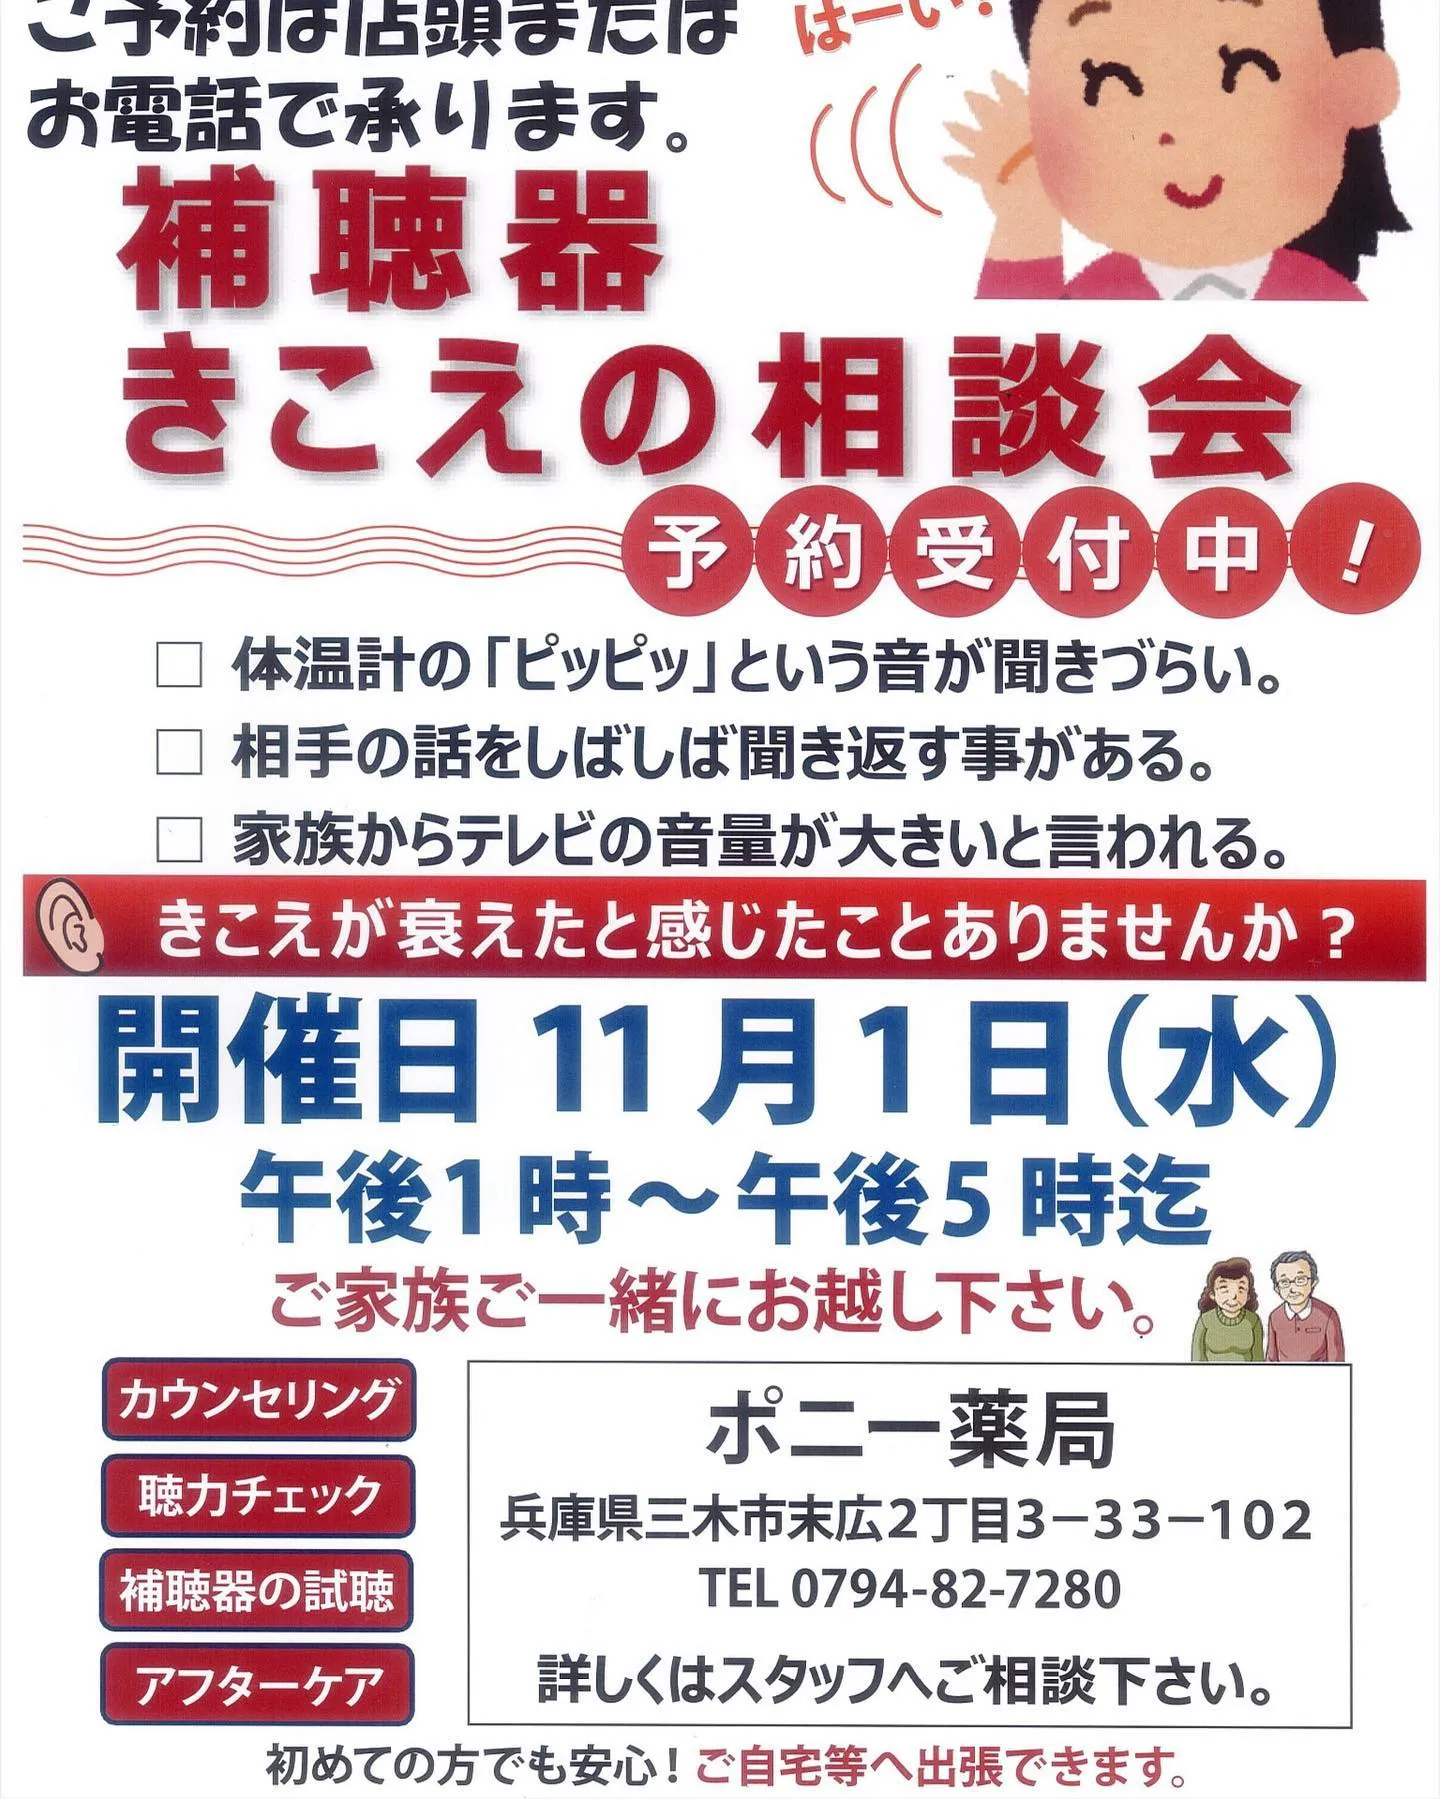 神戸と三木にある薬局の健康イベント開催のお知らせです。